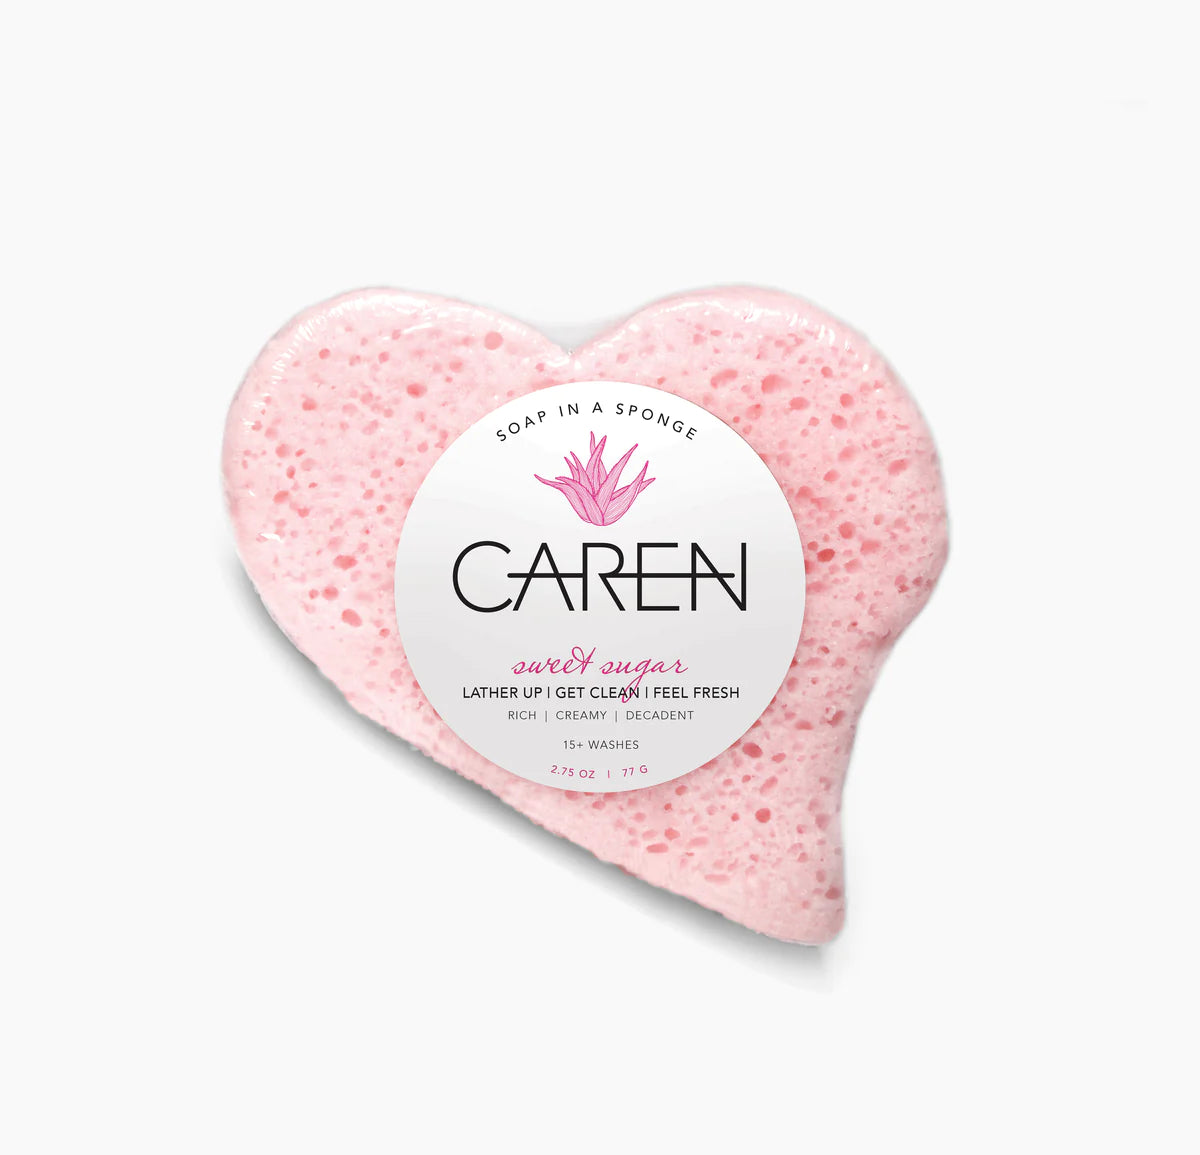 Caren "Sweet Sugar" soap sponge in the shape of a pink heart.